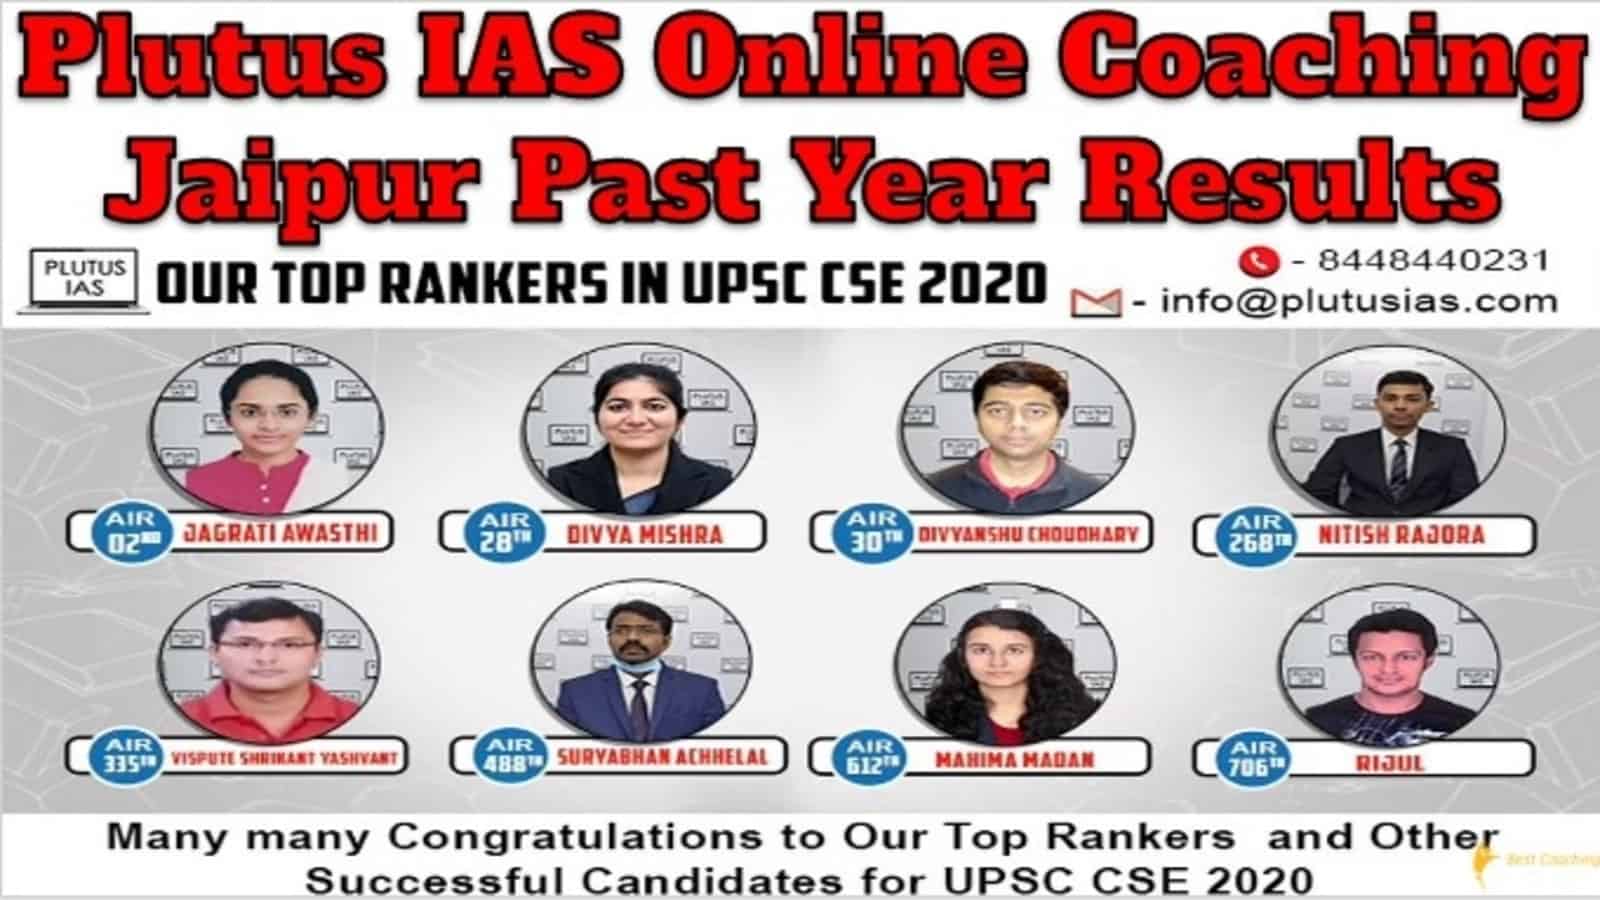 Plutus IAS Online Coaching Jaipur Past Year Results